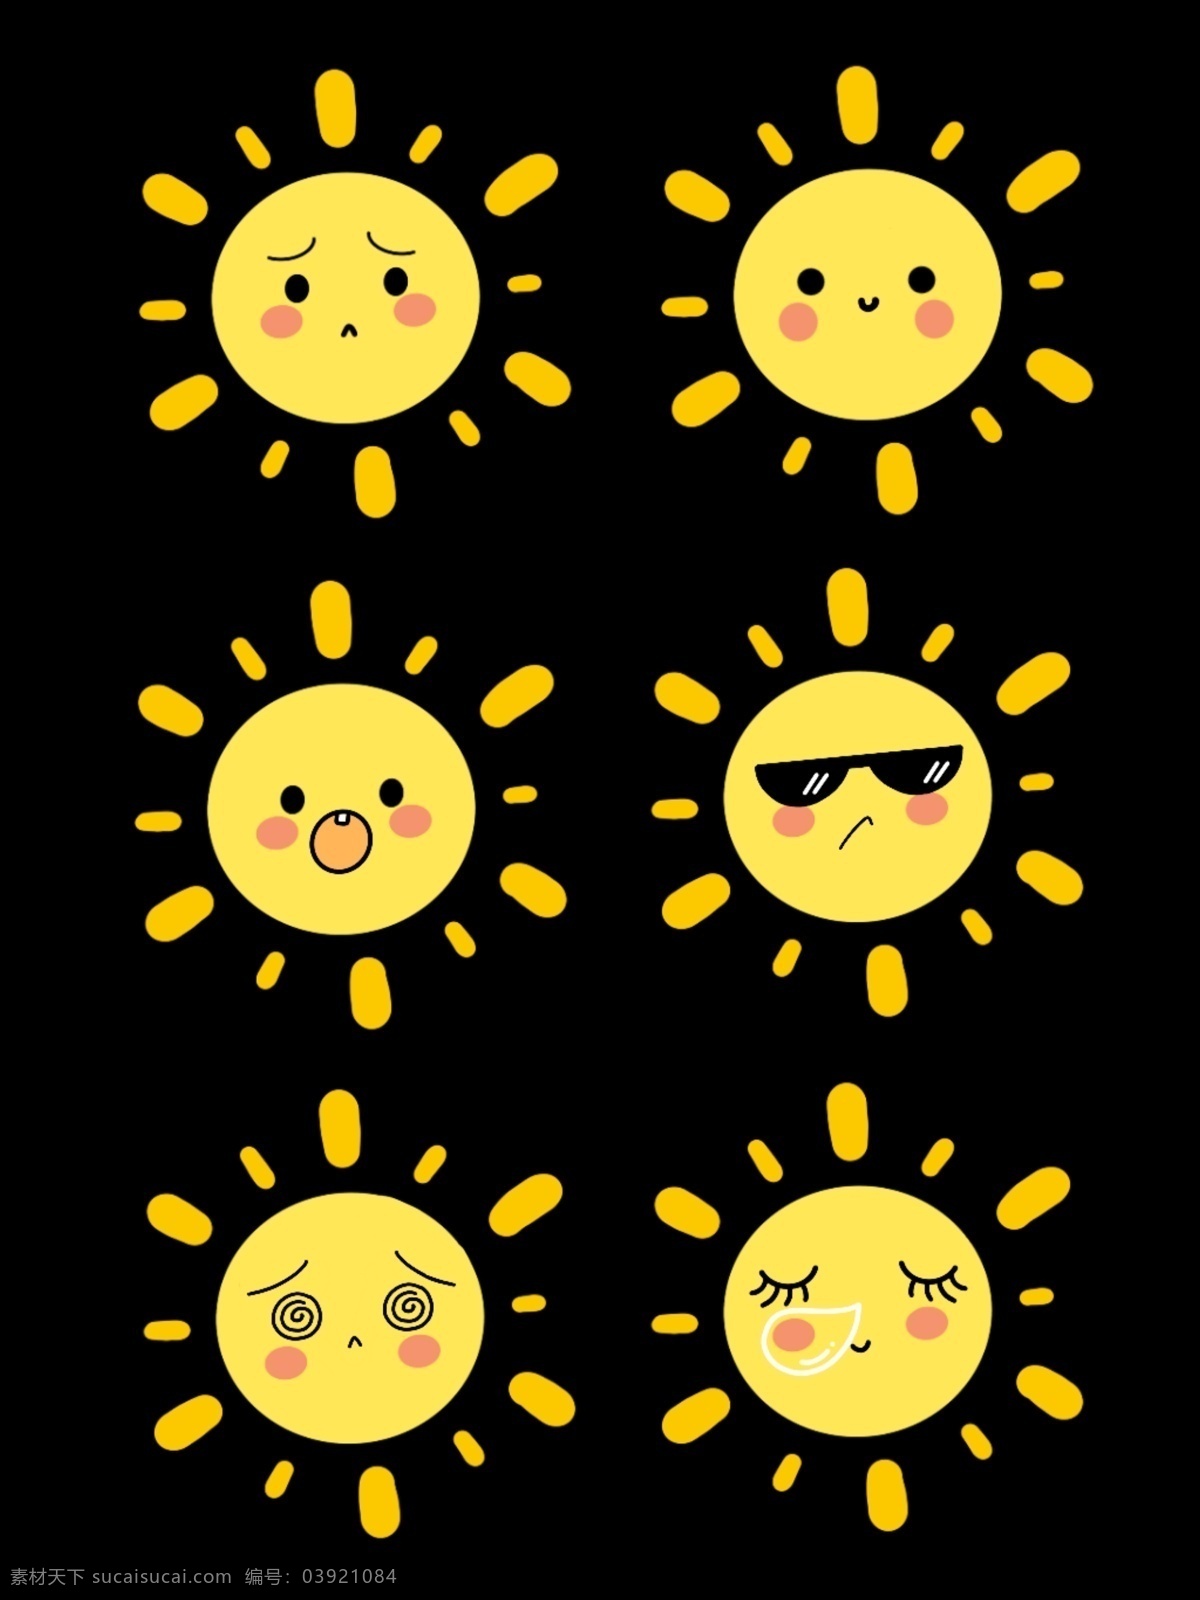 可爱 卡通 小太阳 表情 可爱卡通太阳 表情包 太阳表情 天气 卡通天气 太阳 手绘太阳 幼儿园